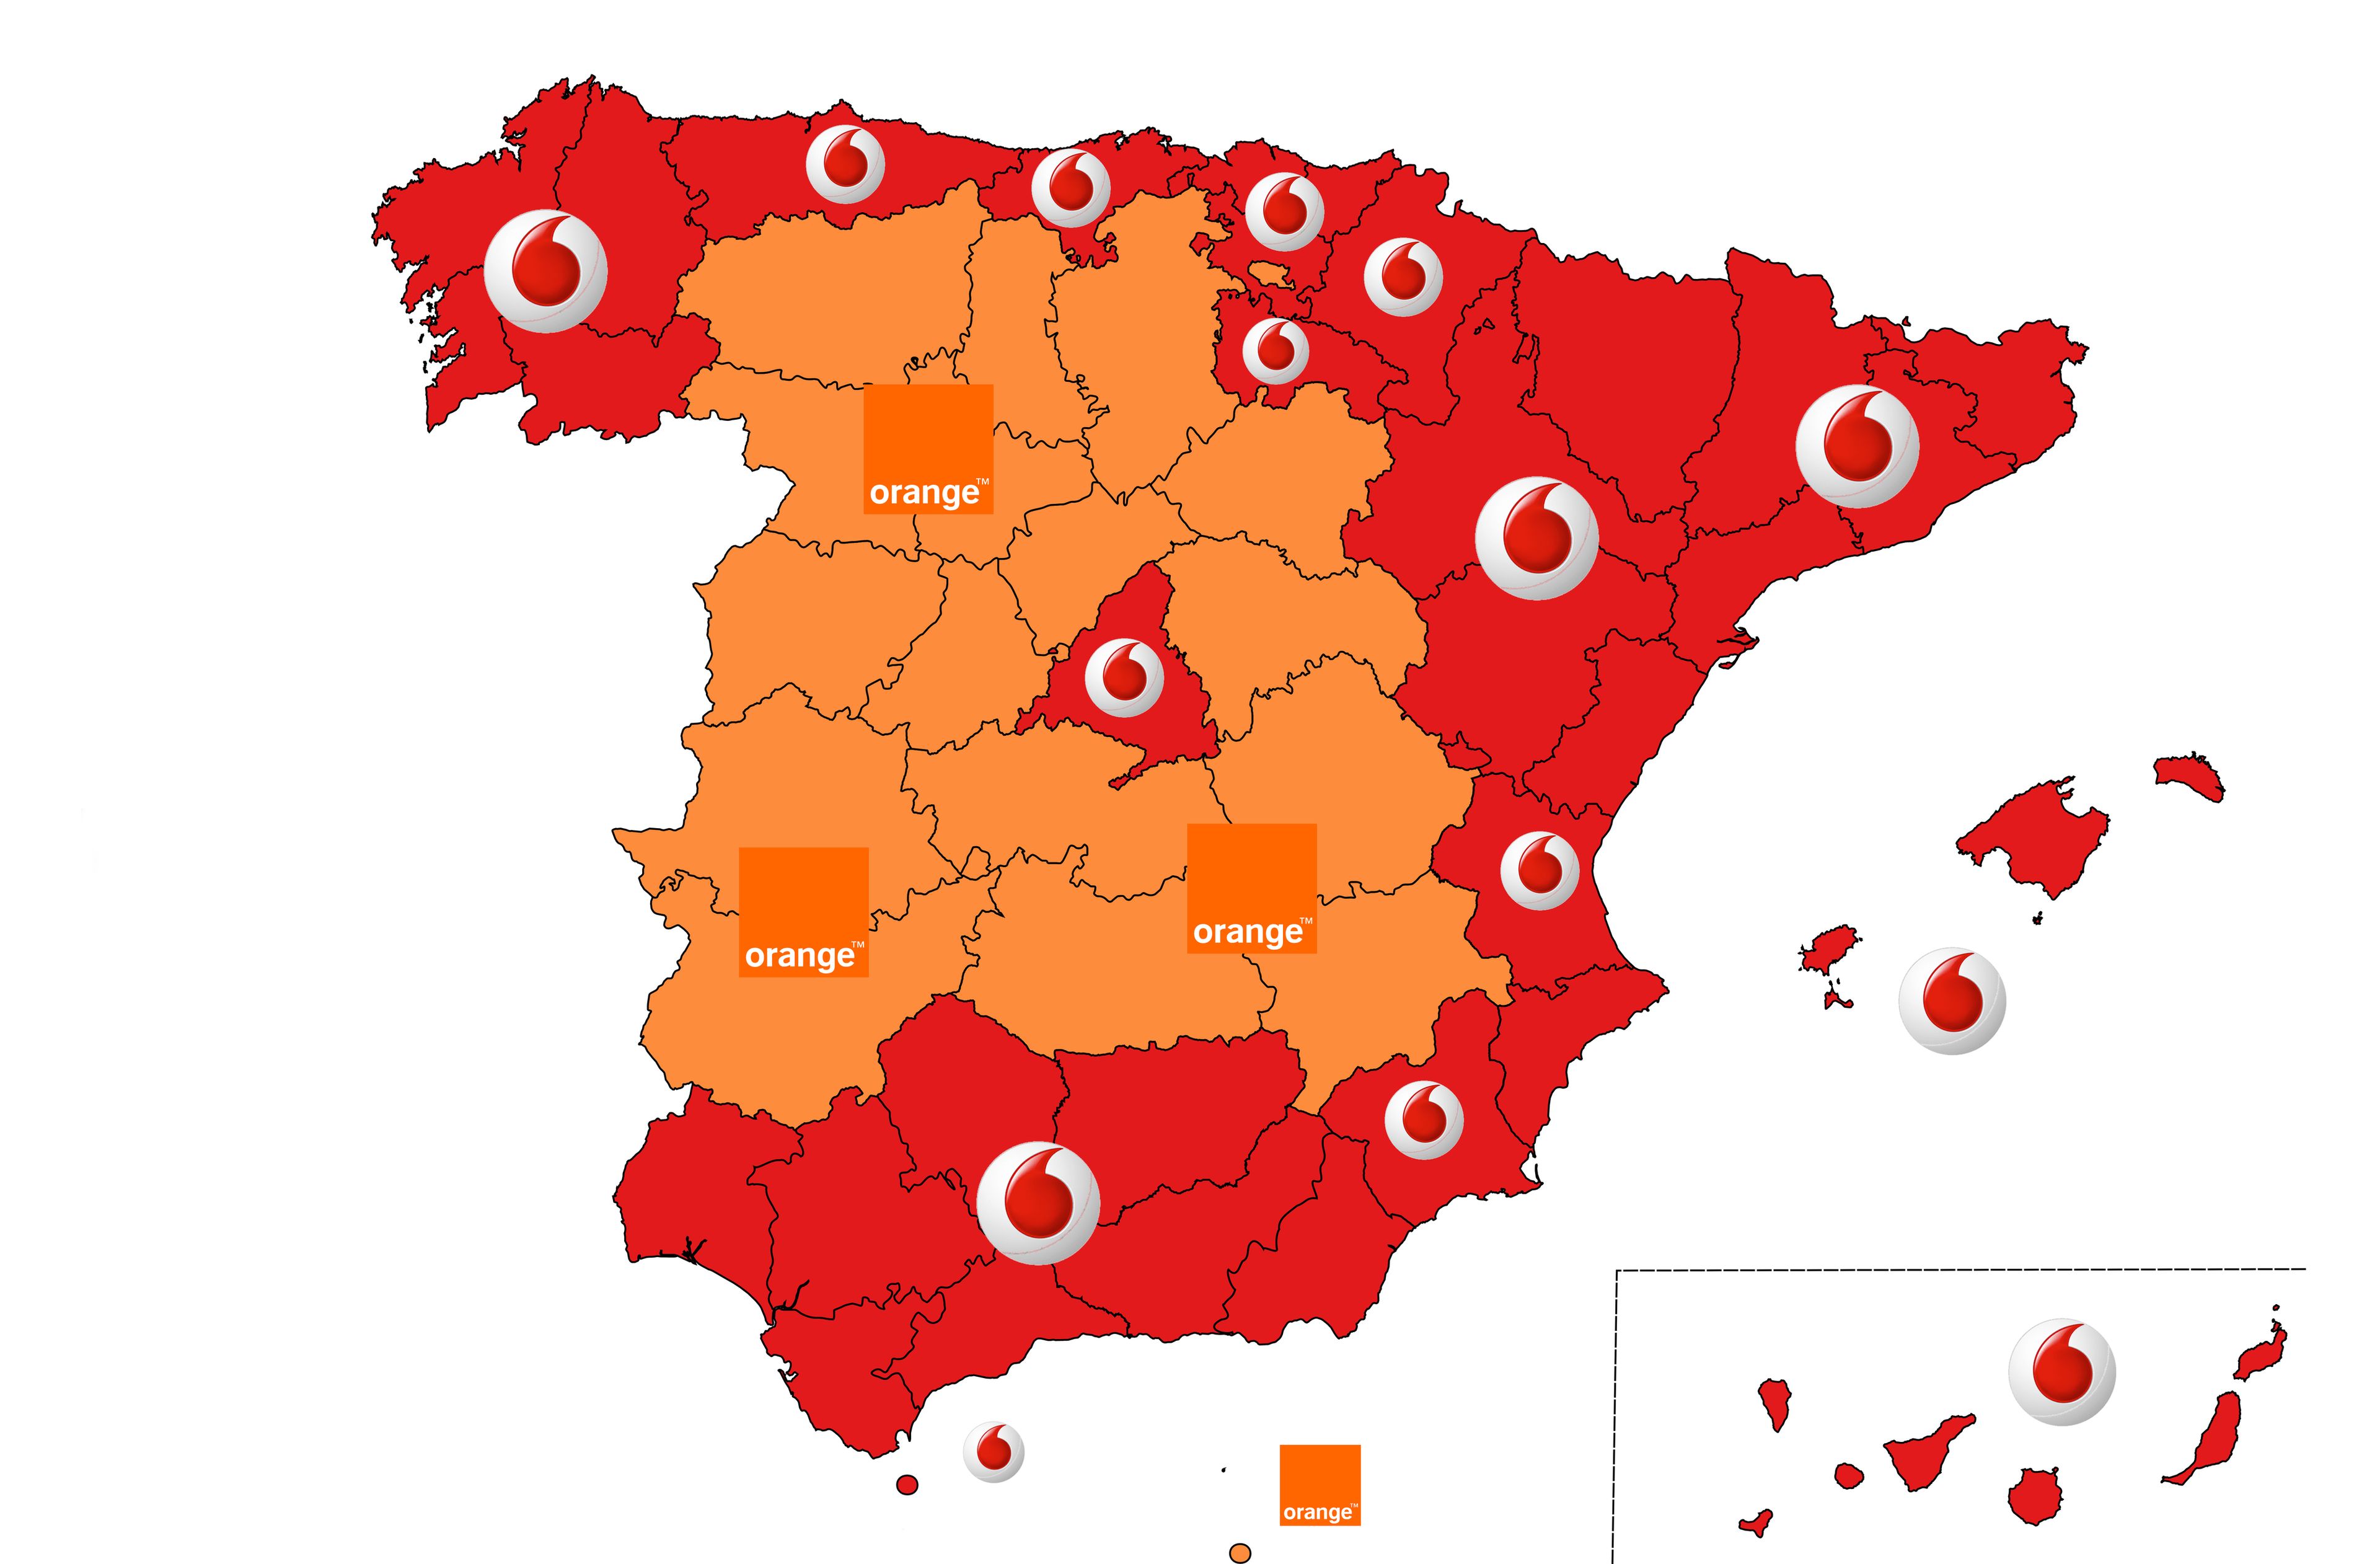 Mapa de las marcas favoritas de telecomunicaciones por comunidades autónomas, en España.